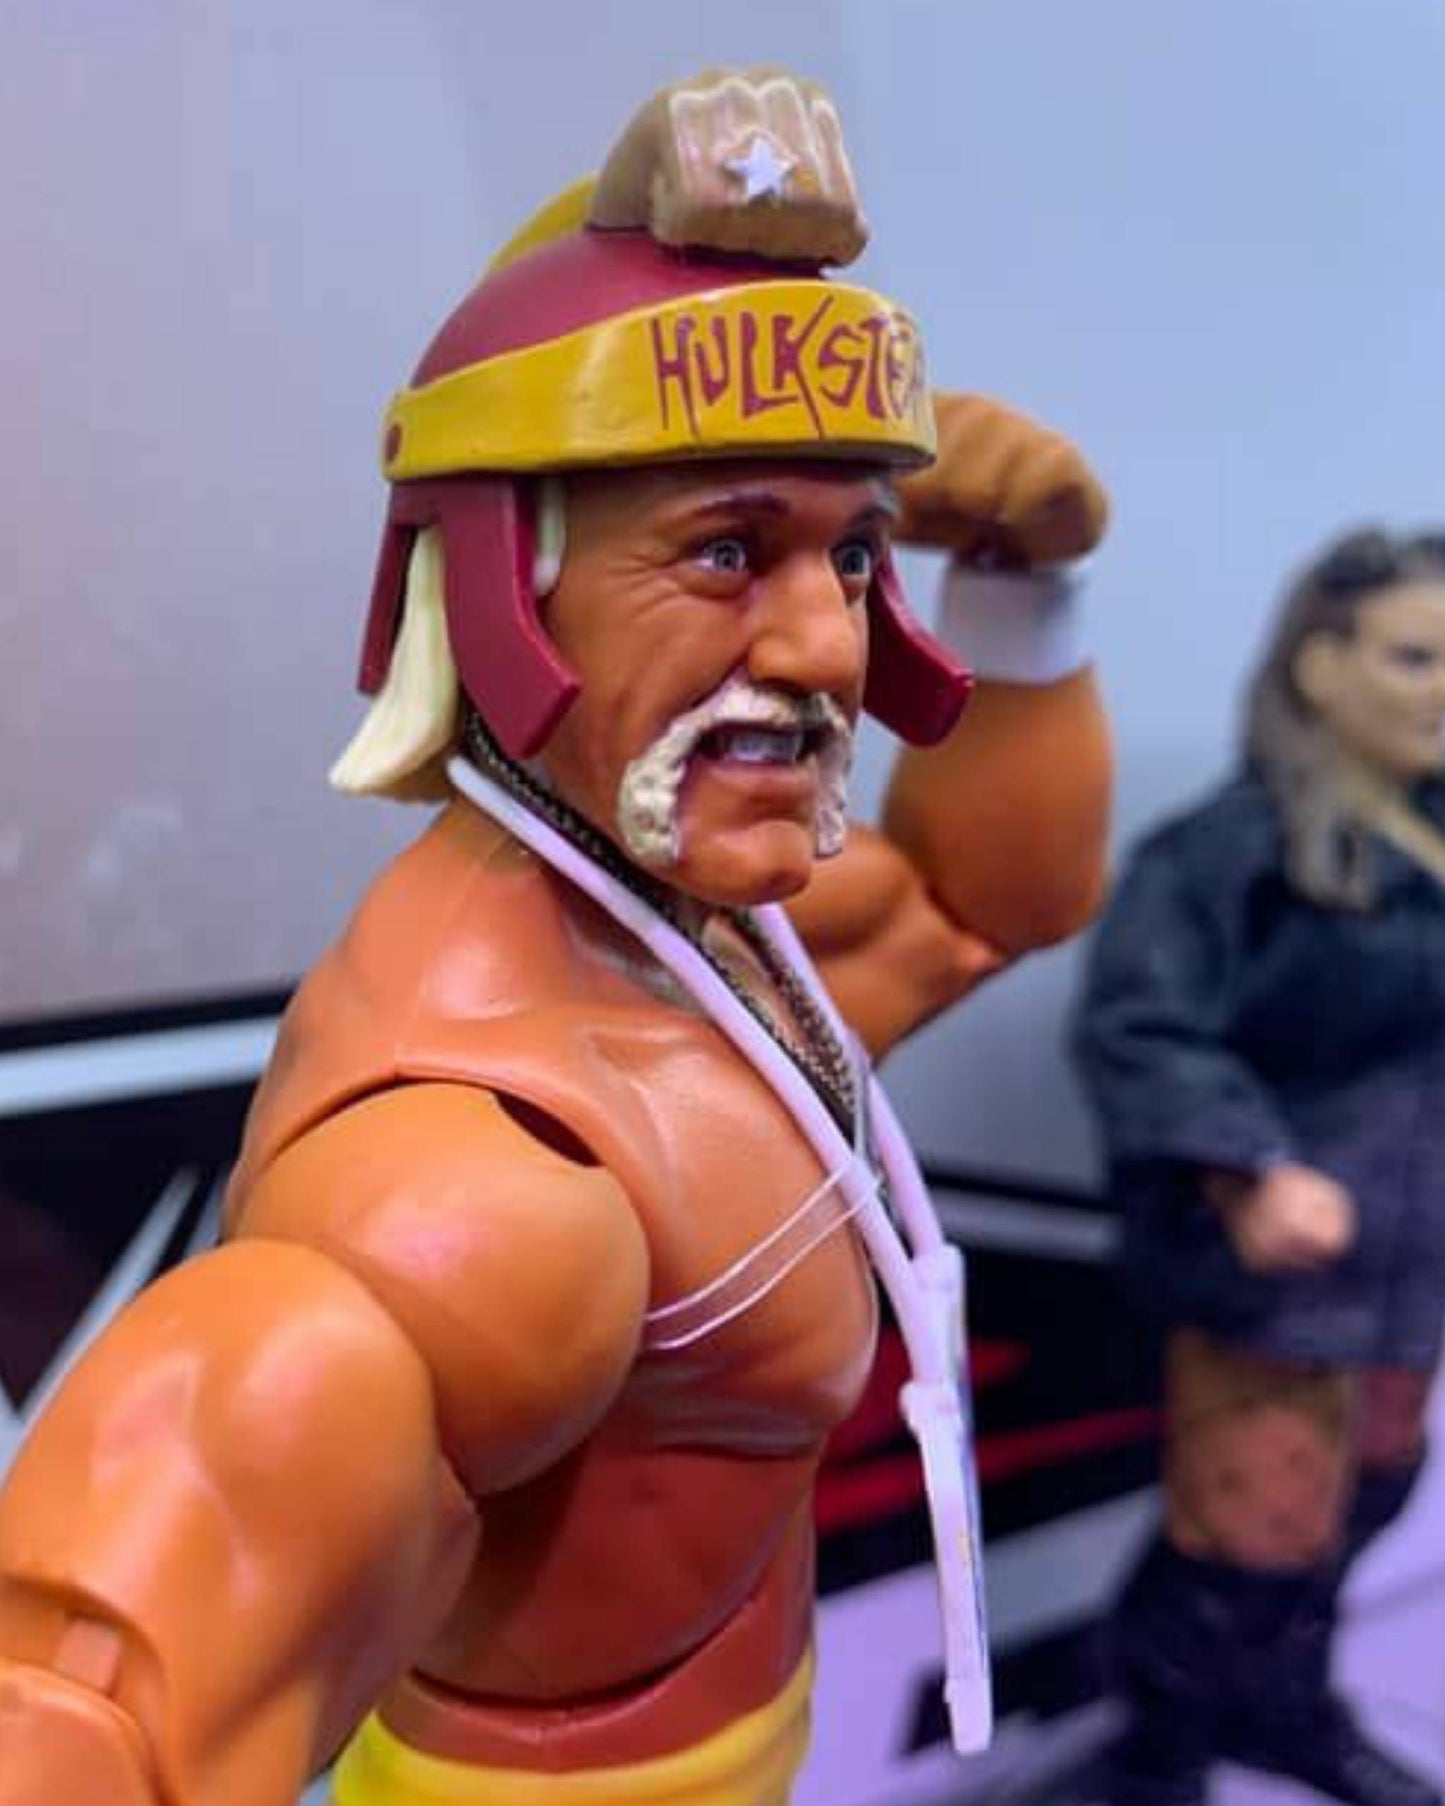 2022 WWE Mattel Elite Collection Series 96 Hulk Hogan